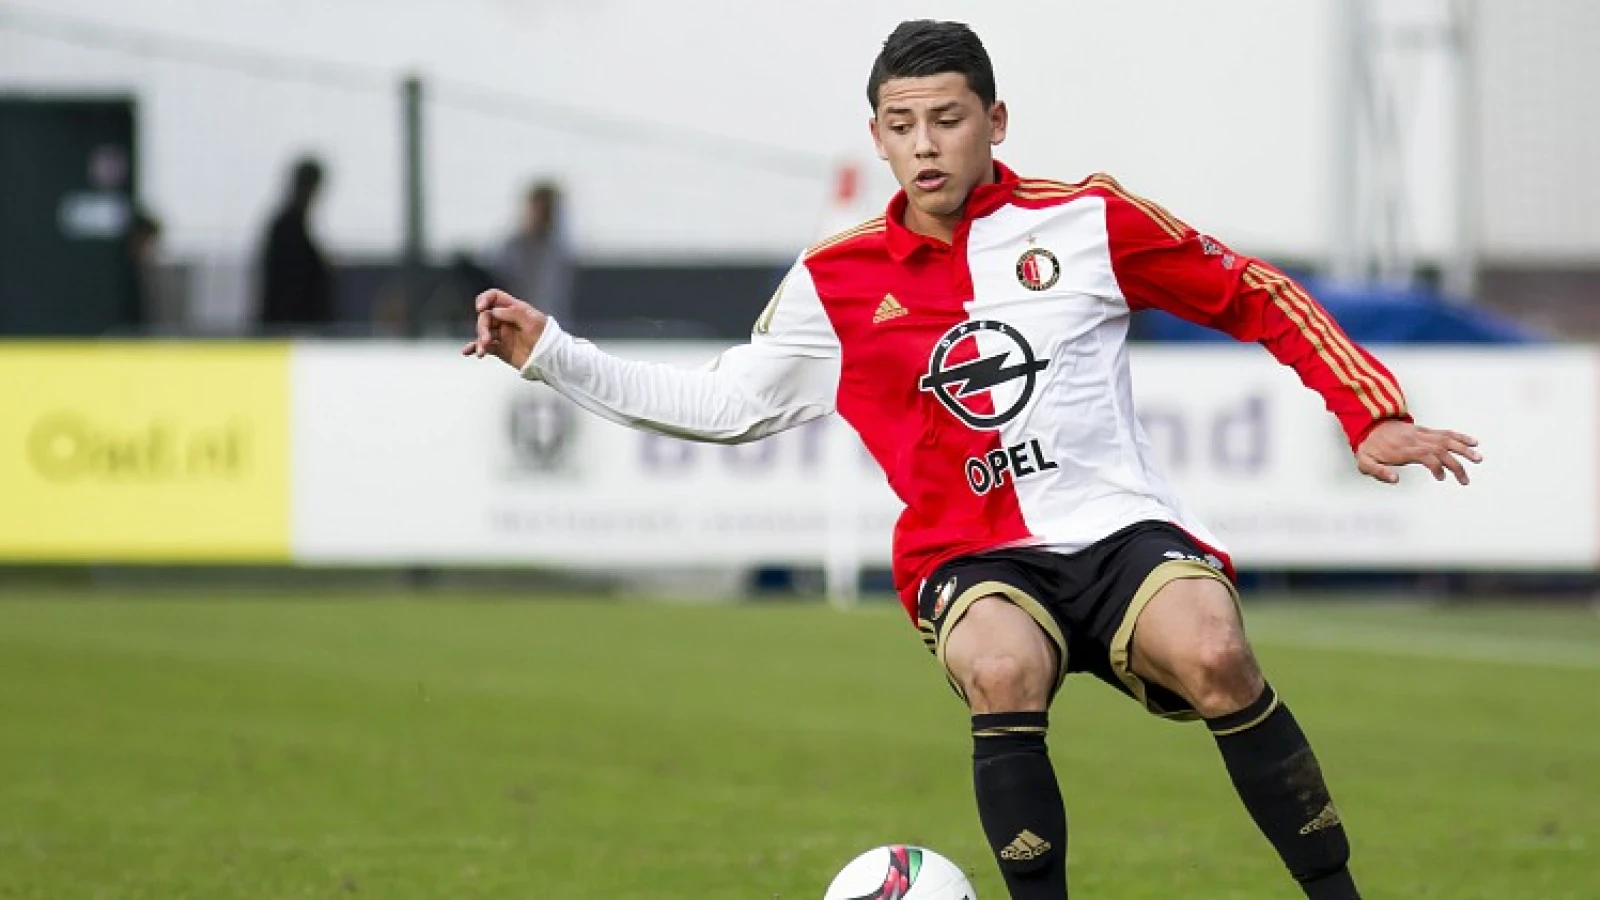 'Jong' Feyenoord 2 met ruime cijfers onderuit tegen ADO Den Haag 2